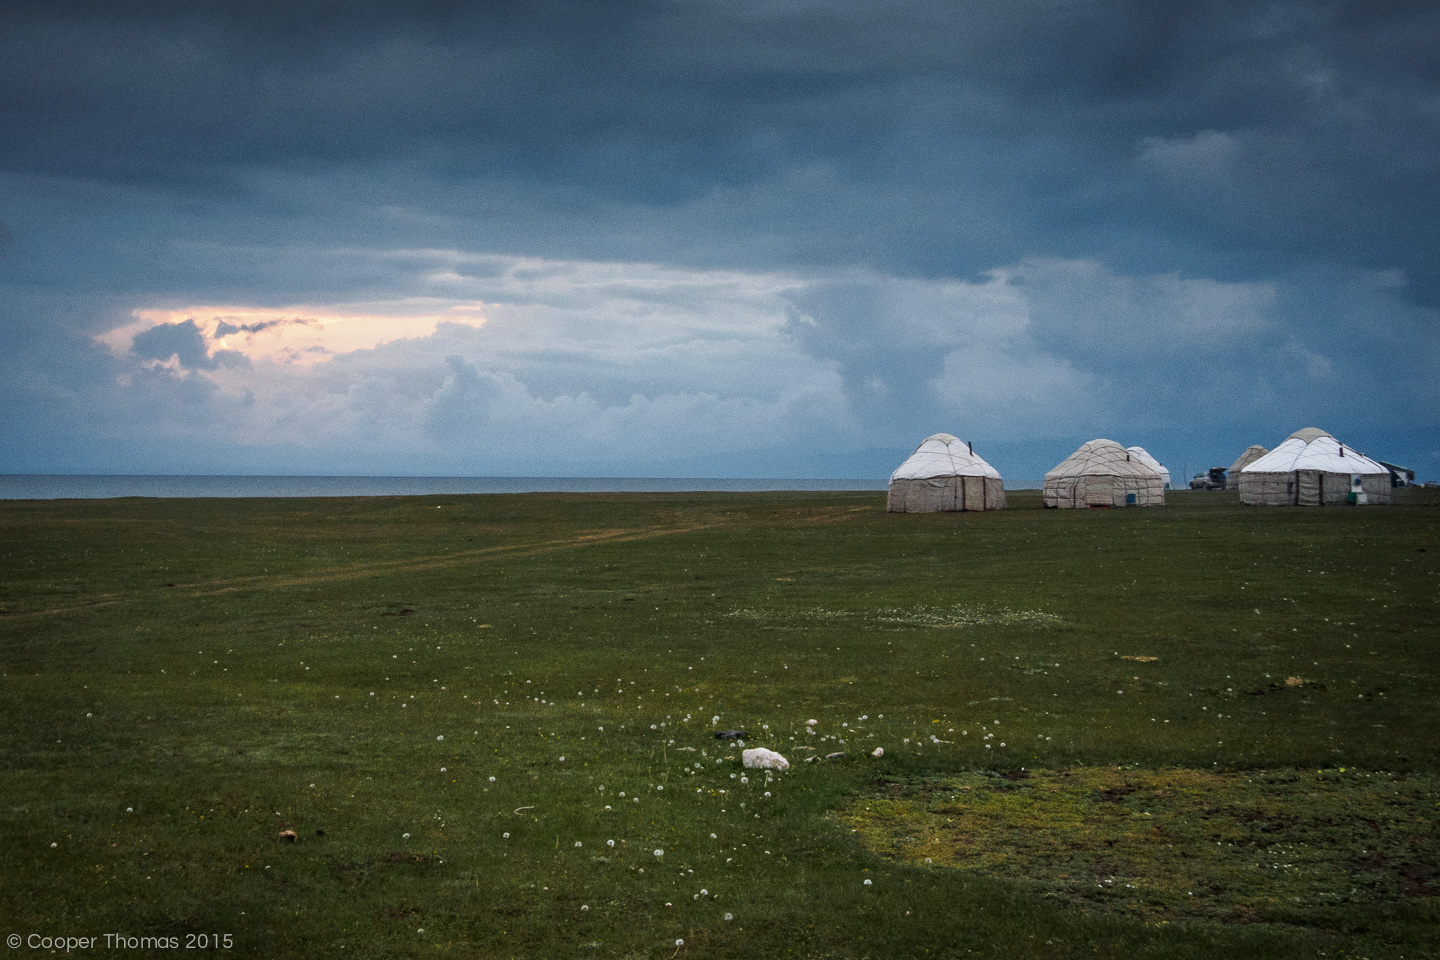 Lake yurt yurt yurt. Done.